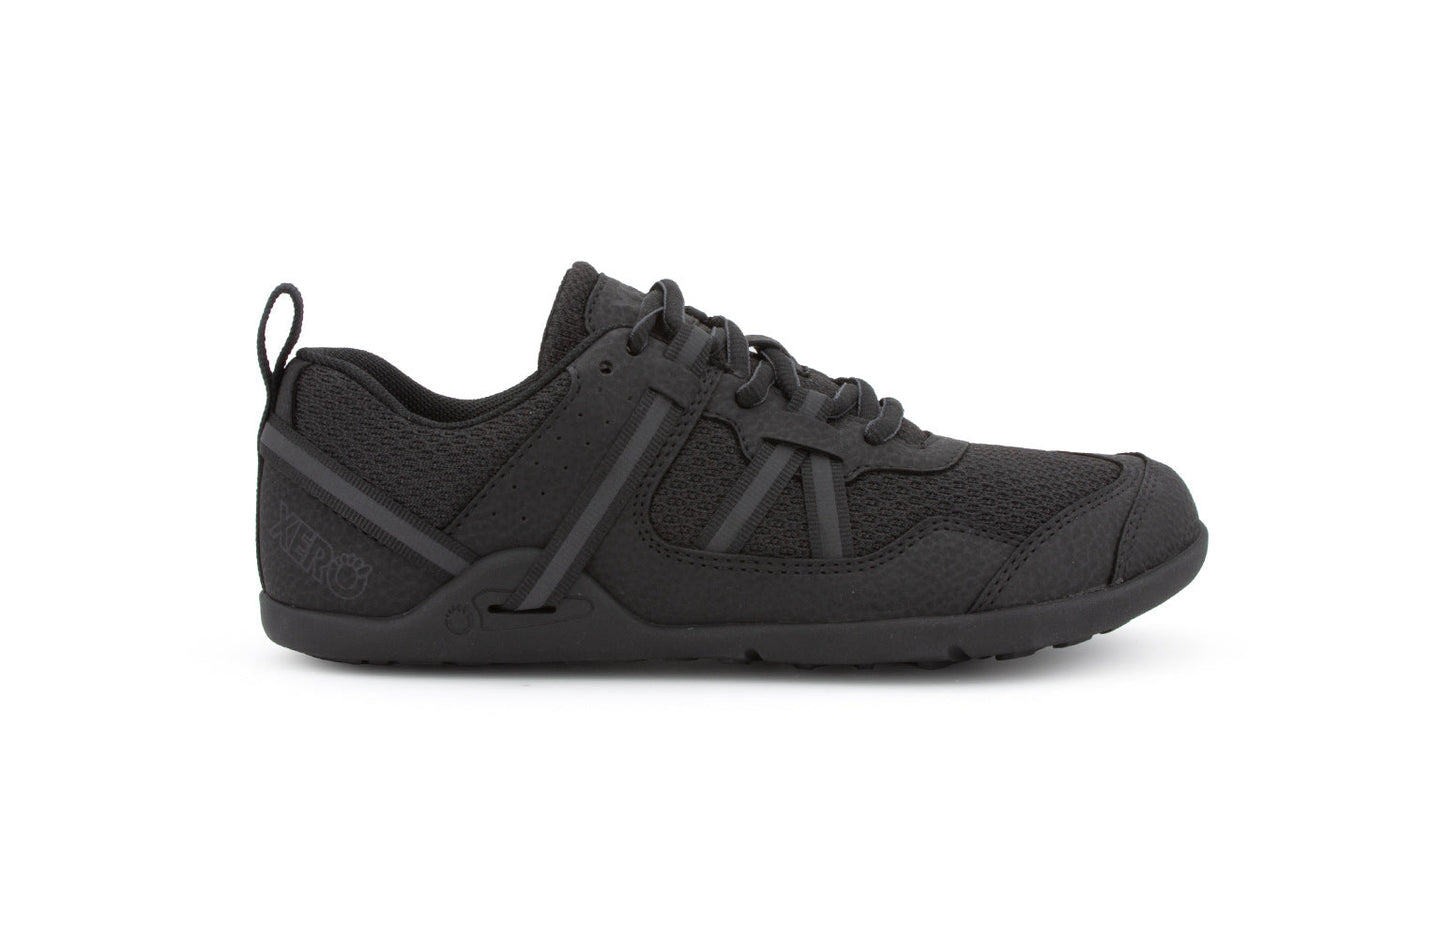 Xero Shoes Prio Kids barfods træningssko/sneakers til børn i farven black, yderside